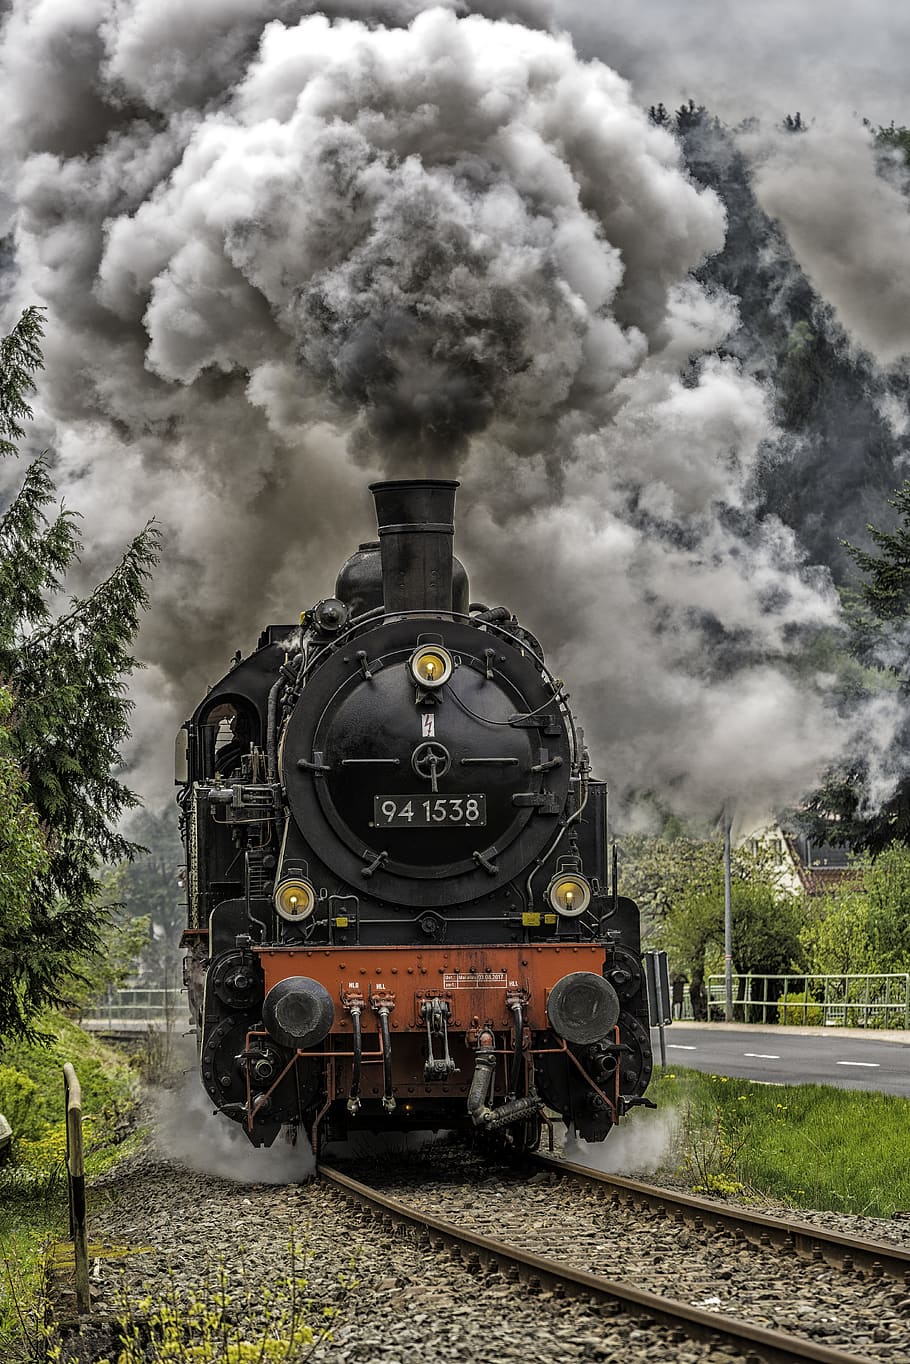 lokomotif uap, kereta api, asap, transportasi kereta api, jalur, kereta uap, kereta - kendaraan, jalur kereta api, lokomotif, moda transportasi